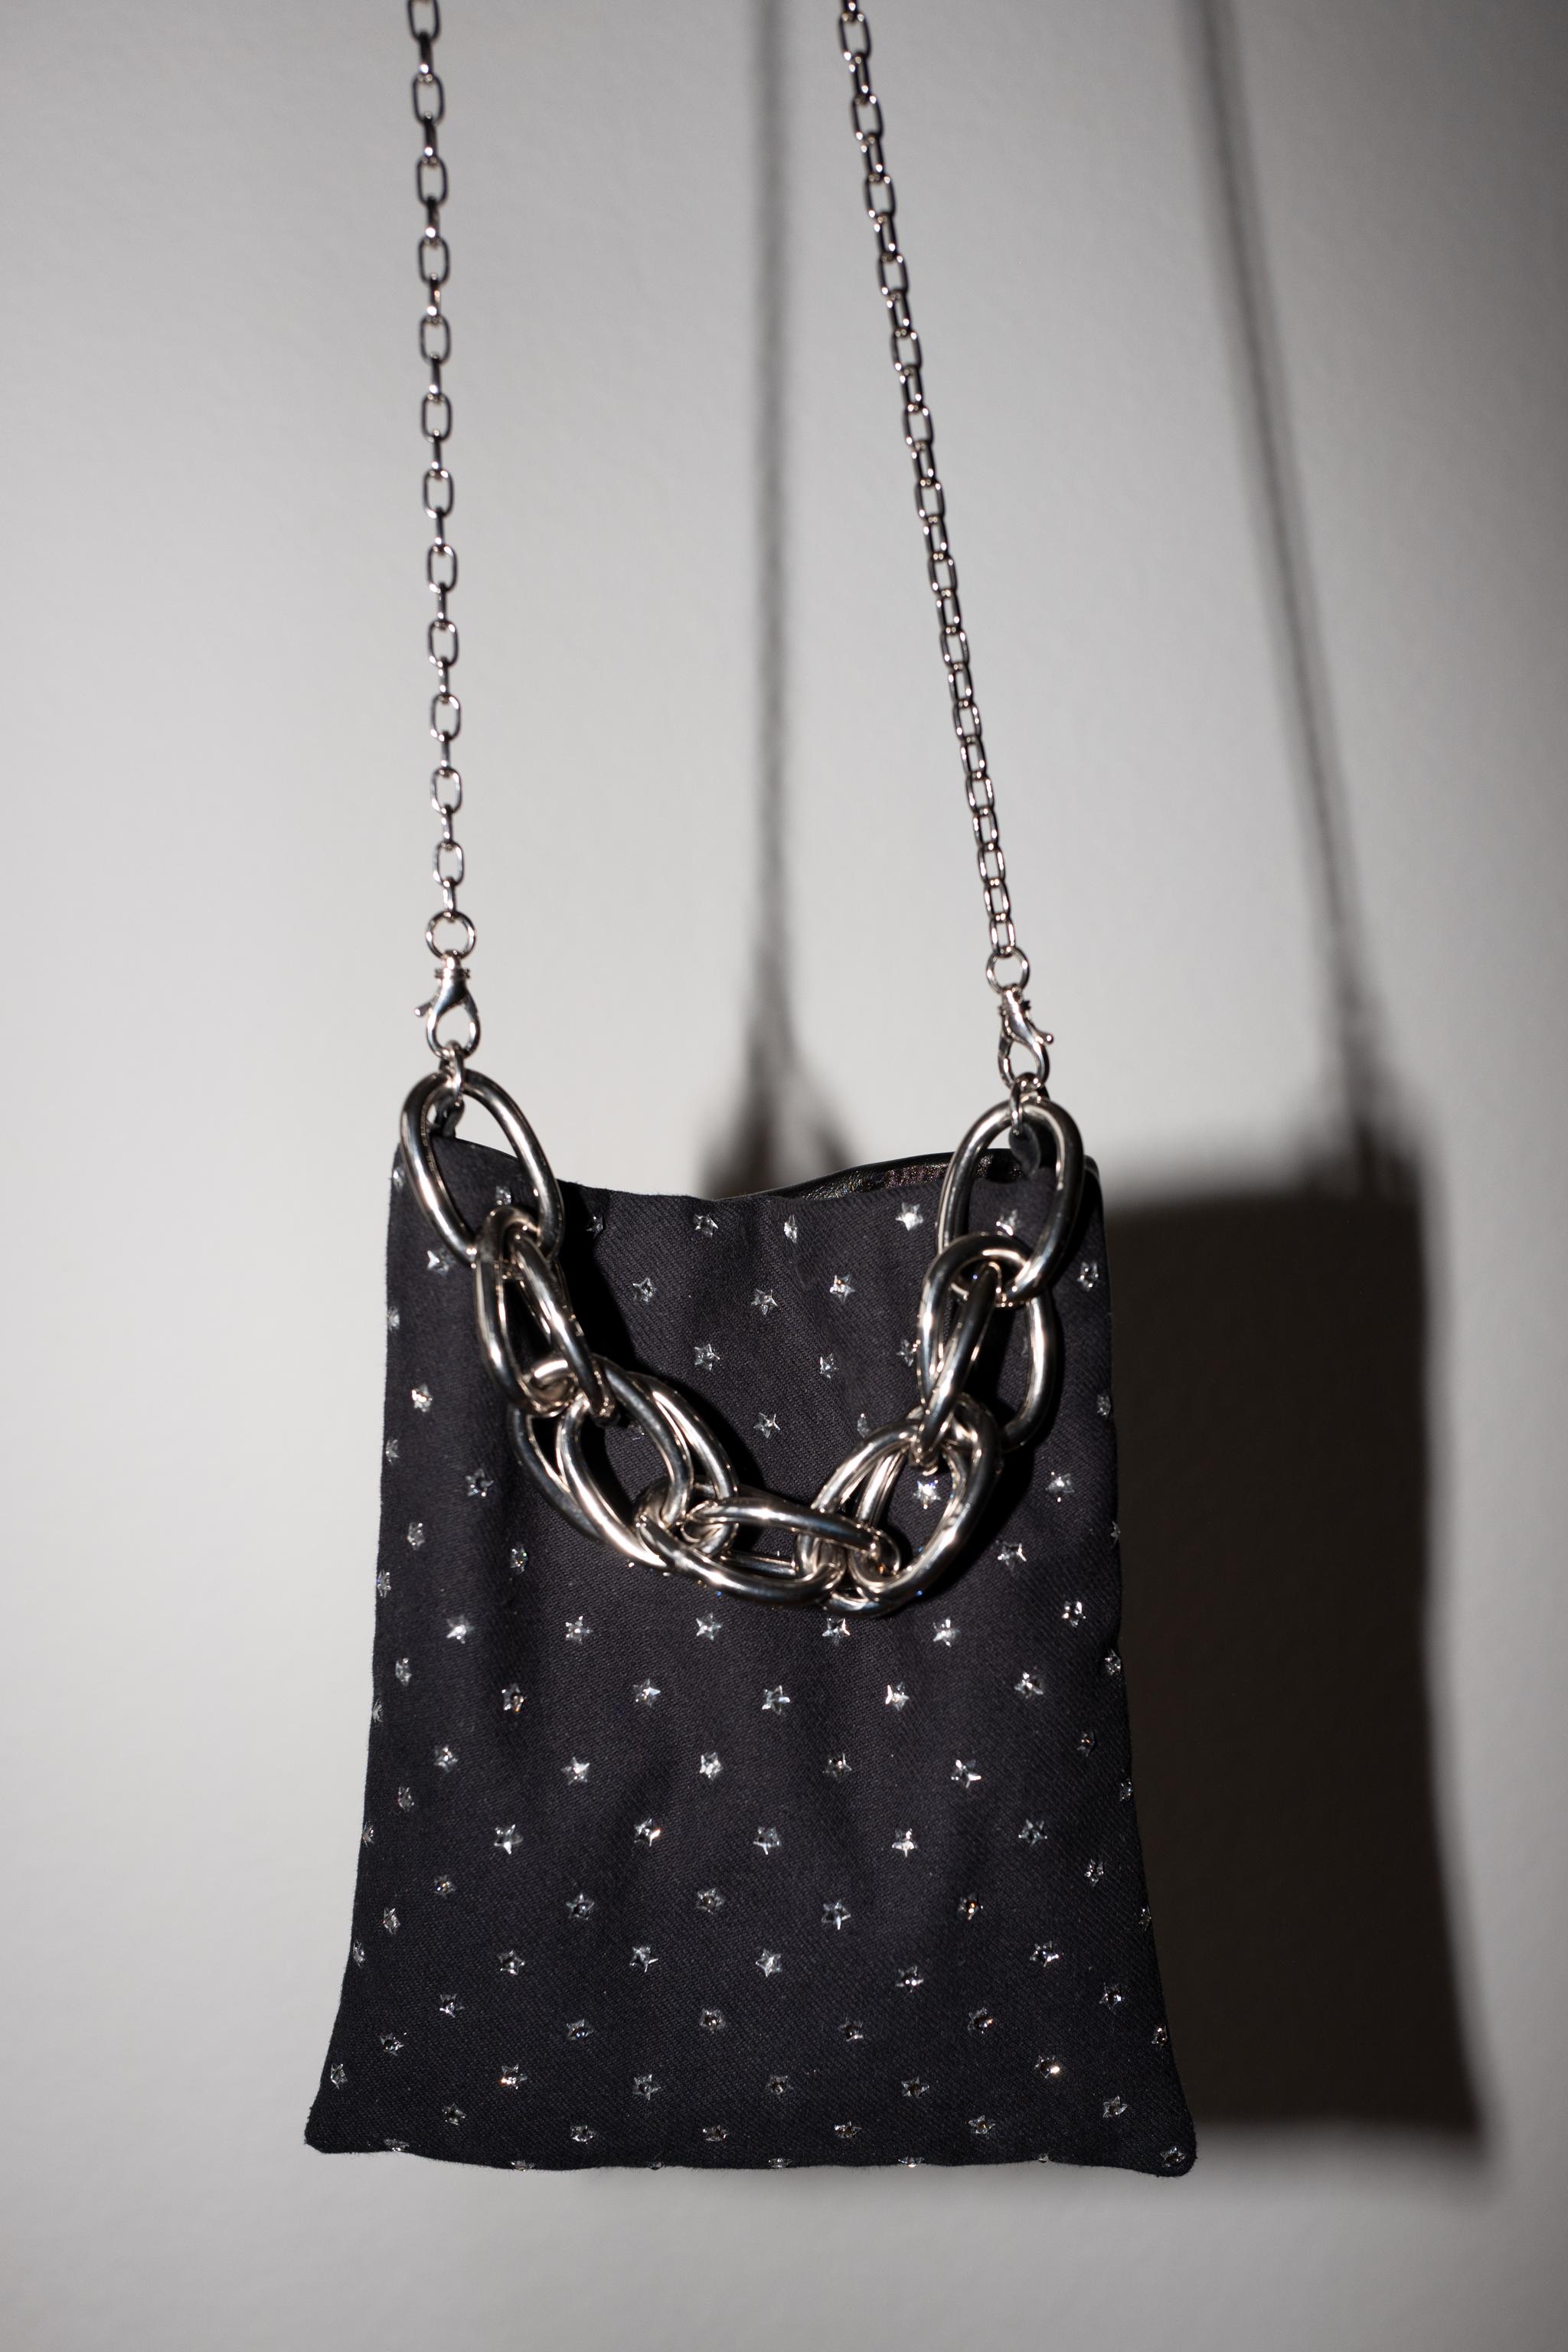 Crystal Star Embellished Black Evening Shoulder Bag Black Leather Chunky Chain For Sale 1